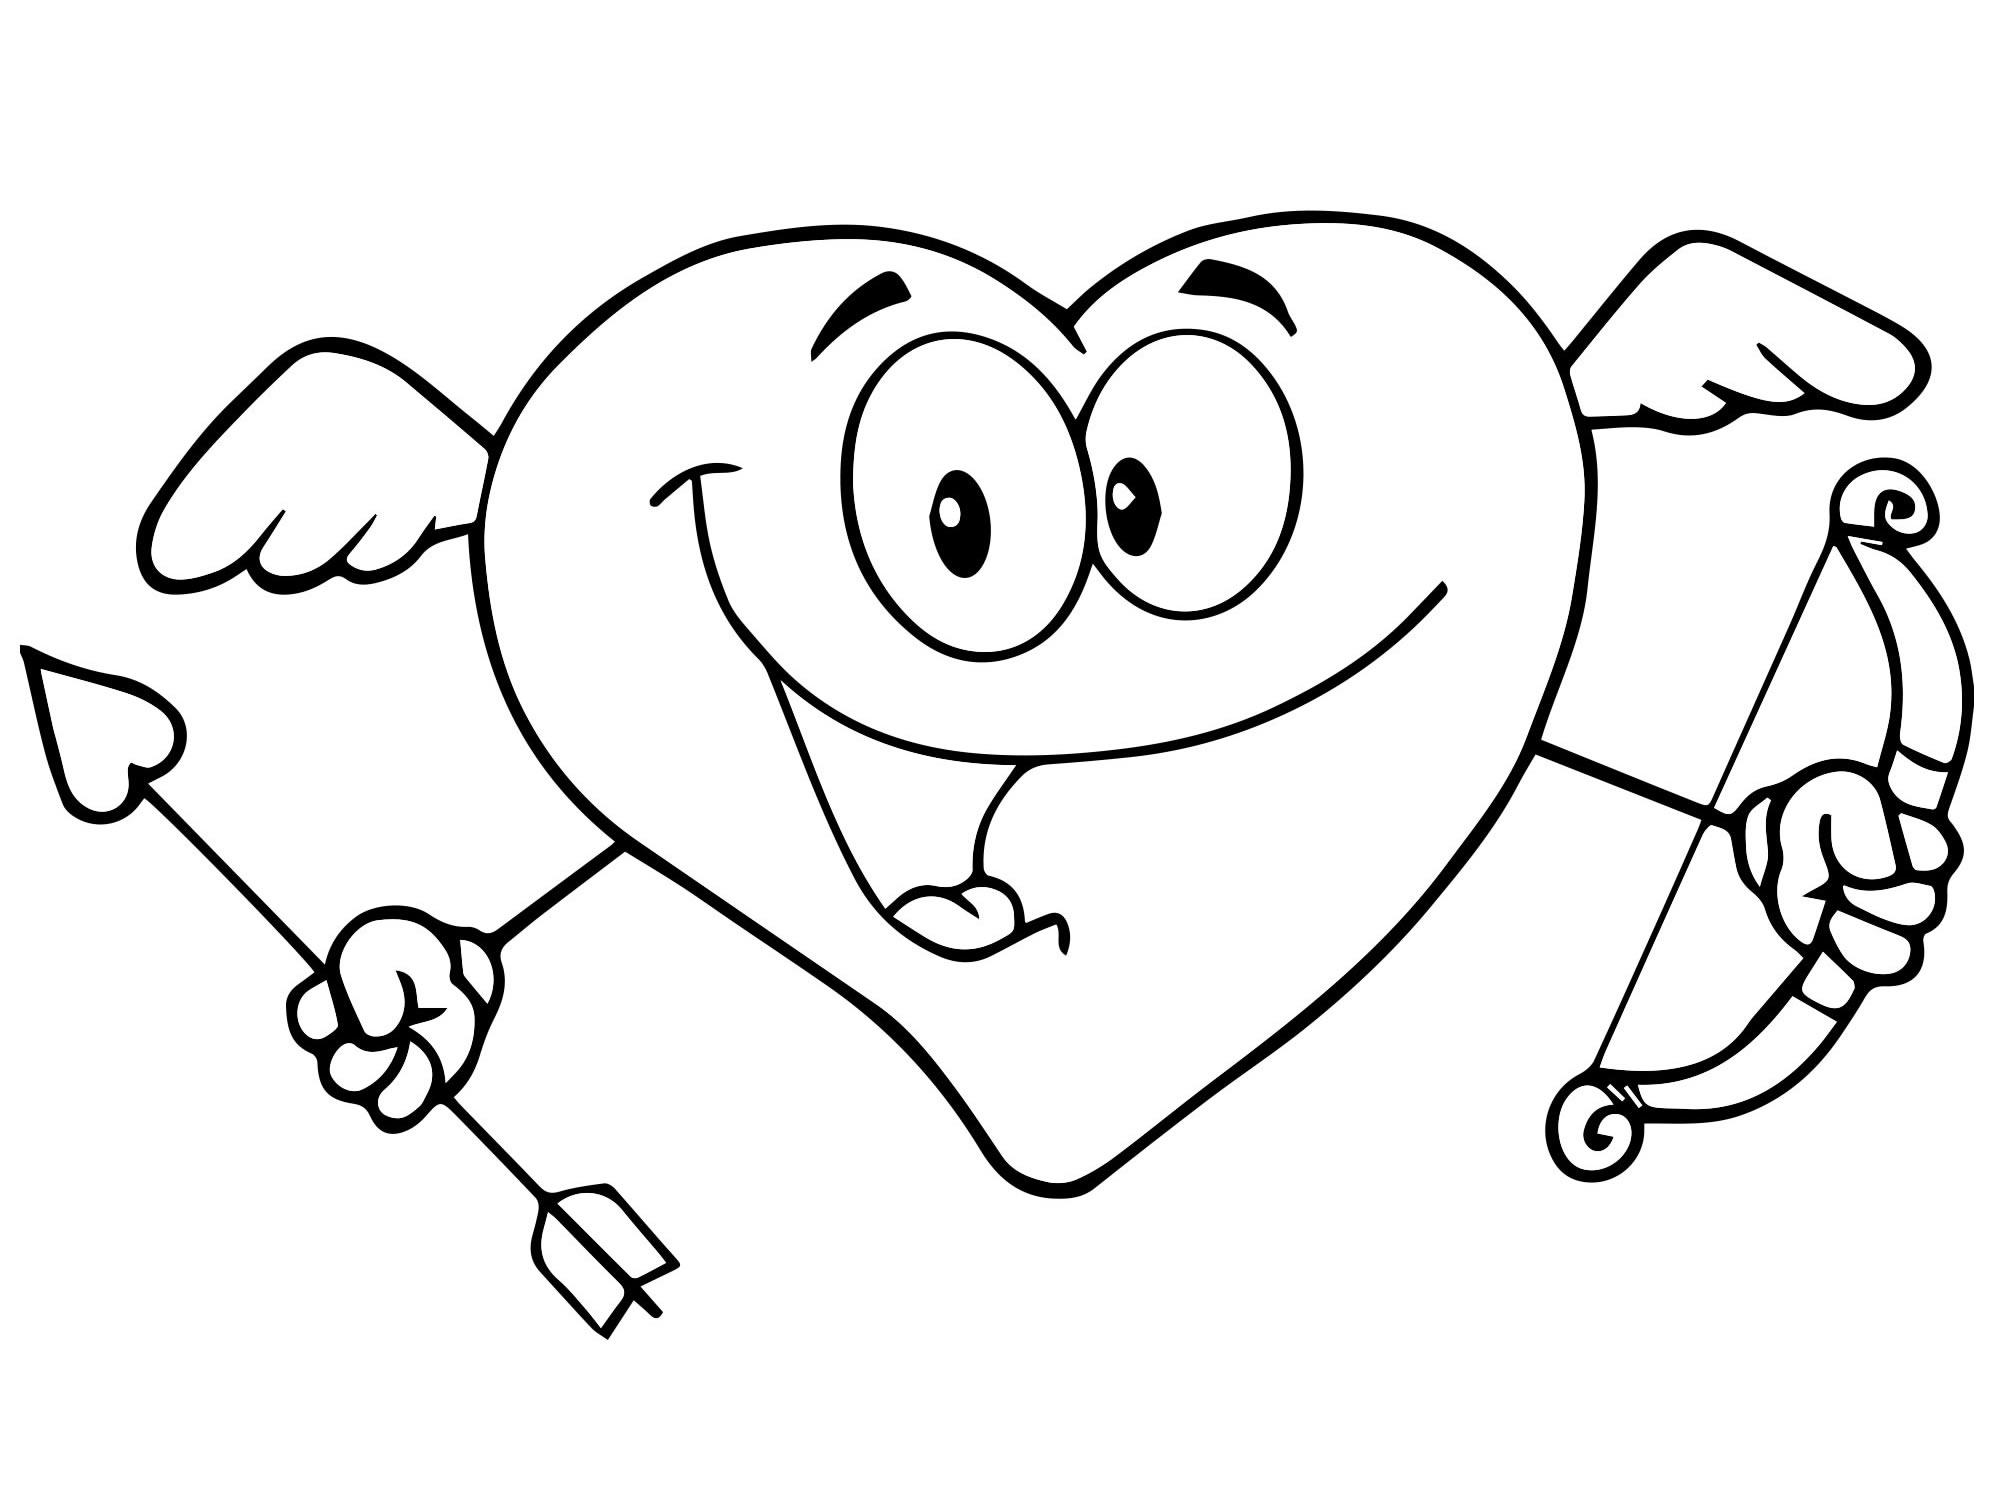 Раскраски Сердце. Скачать и Распечатать | WONDER DAY — Раскраски для детей и взрослых